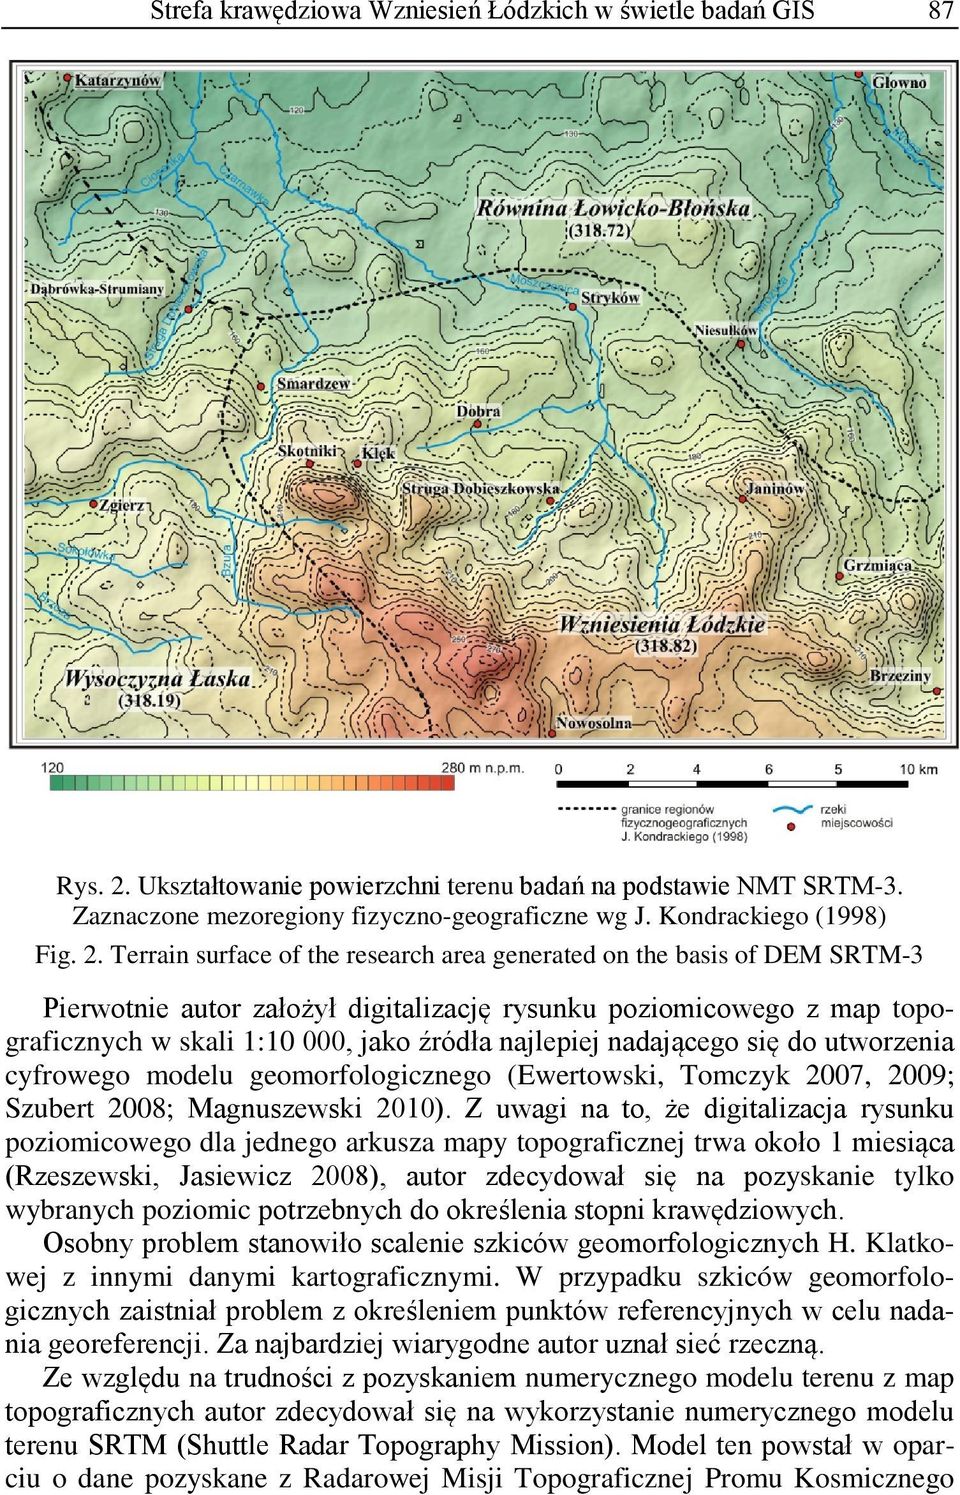 Terrain surface of the research area generated on the basis of DEM SRTM-3 Pierwotnie autor założył digitalizację rysunku poziomicowego z map topograficznych w skali 1:10 000, jako źródła najlepiej